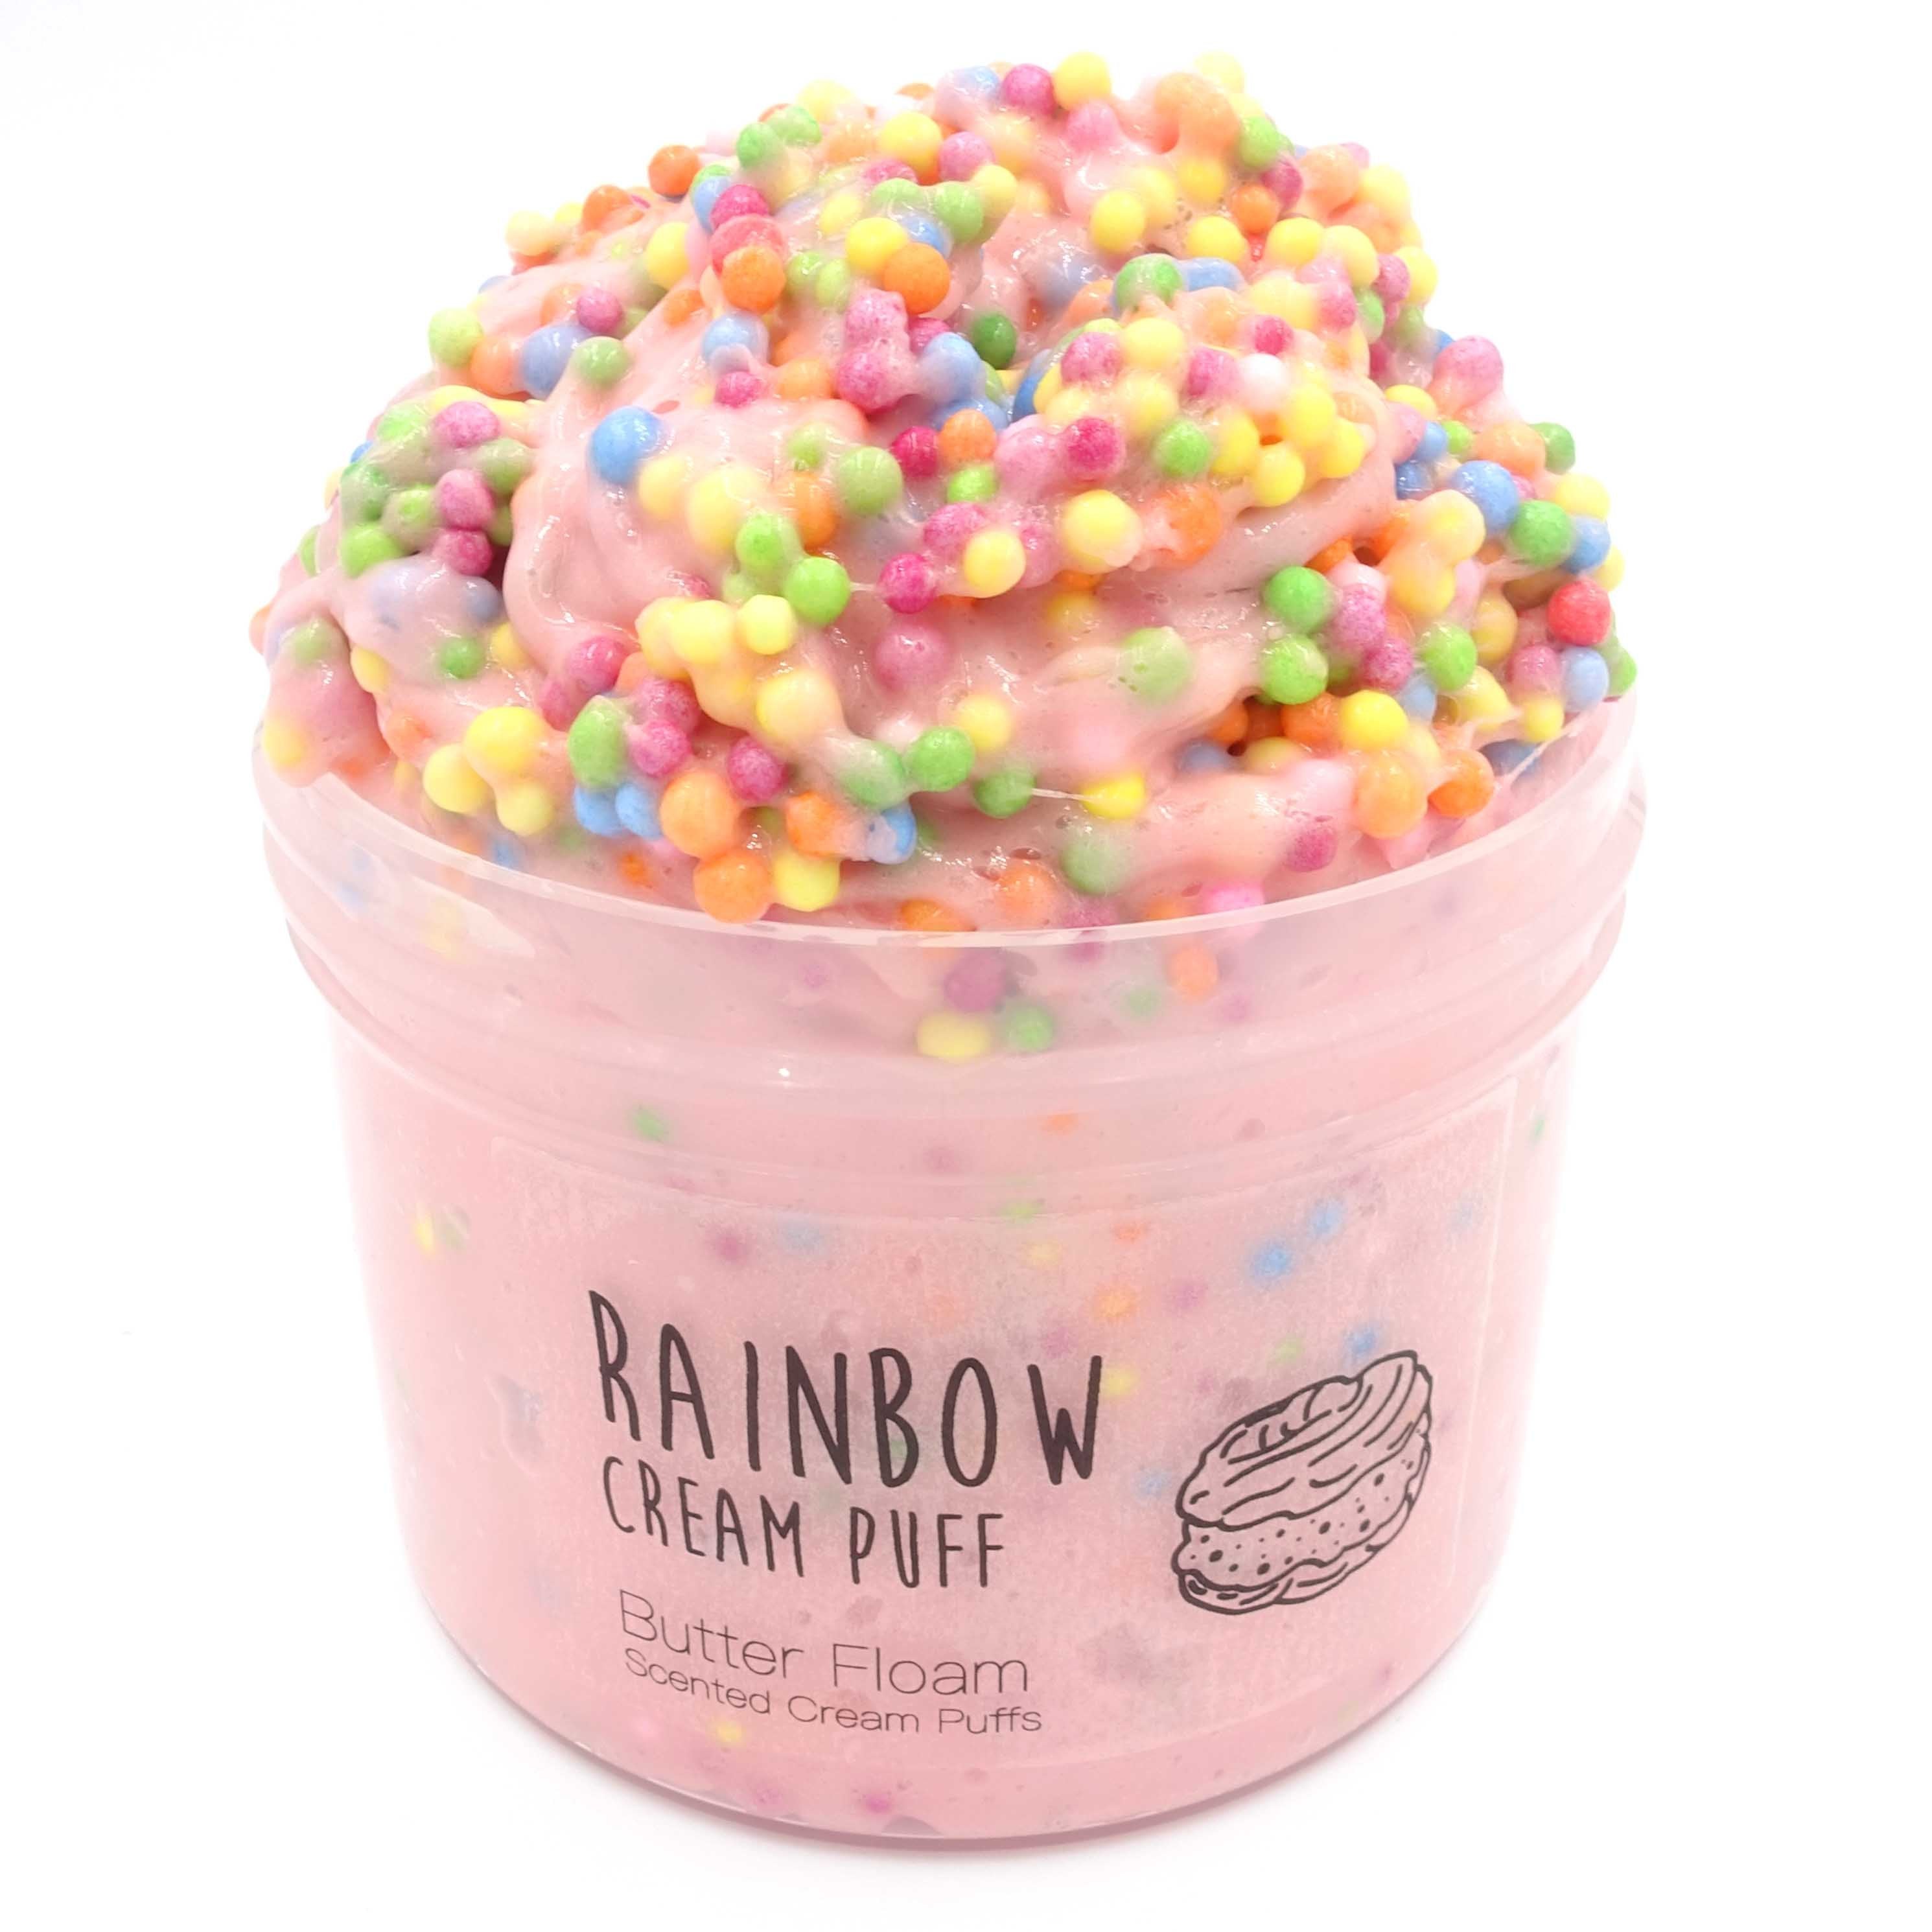 Rainbow Cream Puff Butter Floam